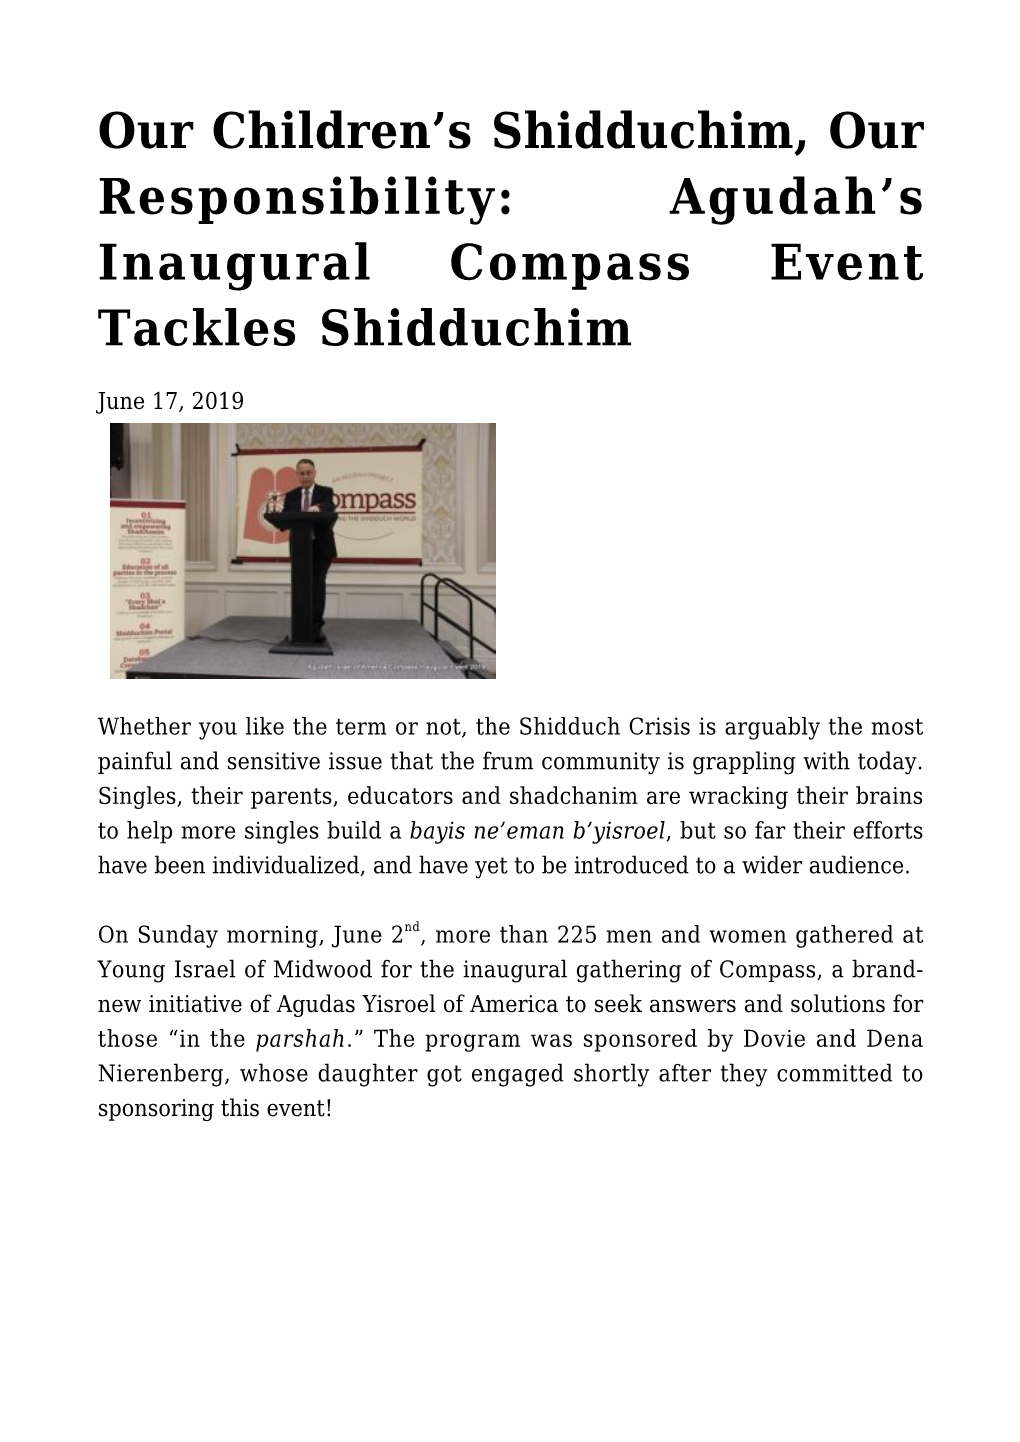 Agudah's Inaugural Compass Event Tackles Shidduchim